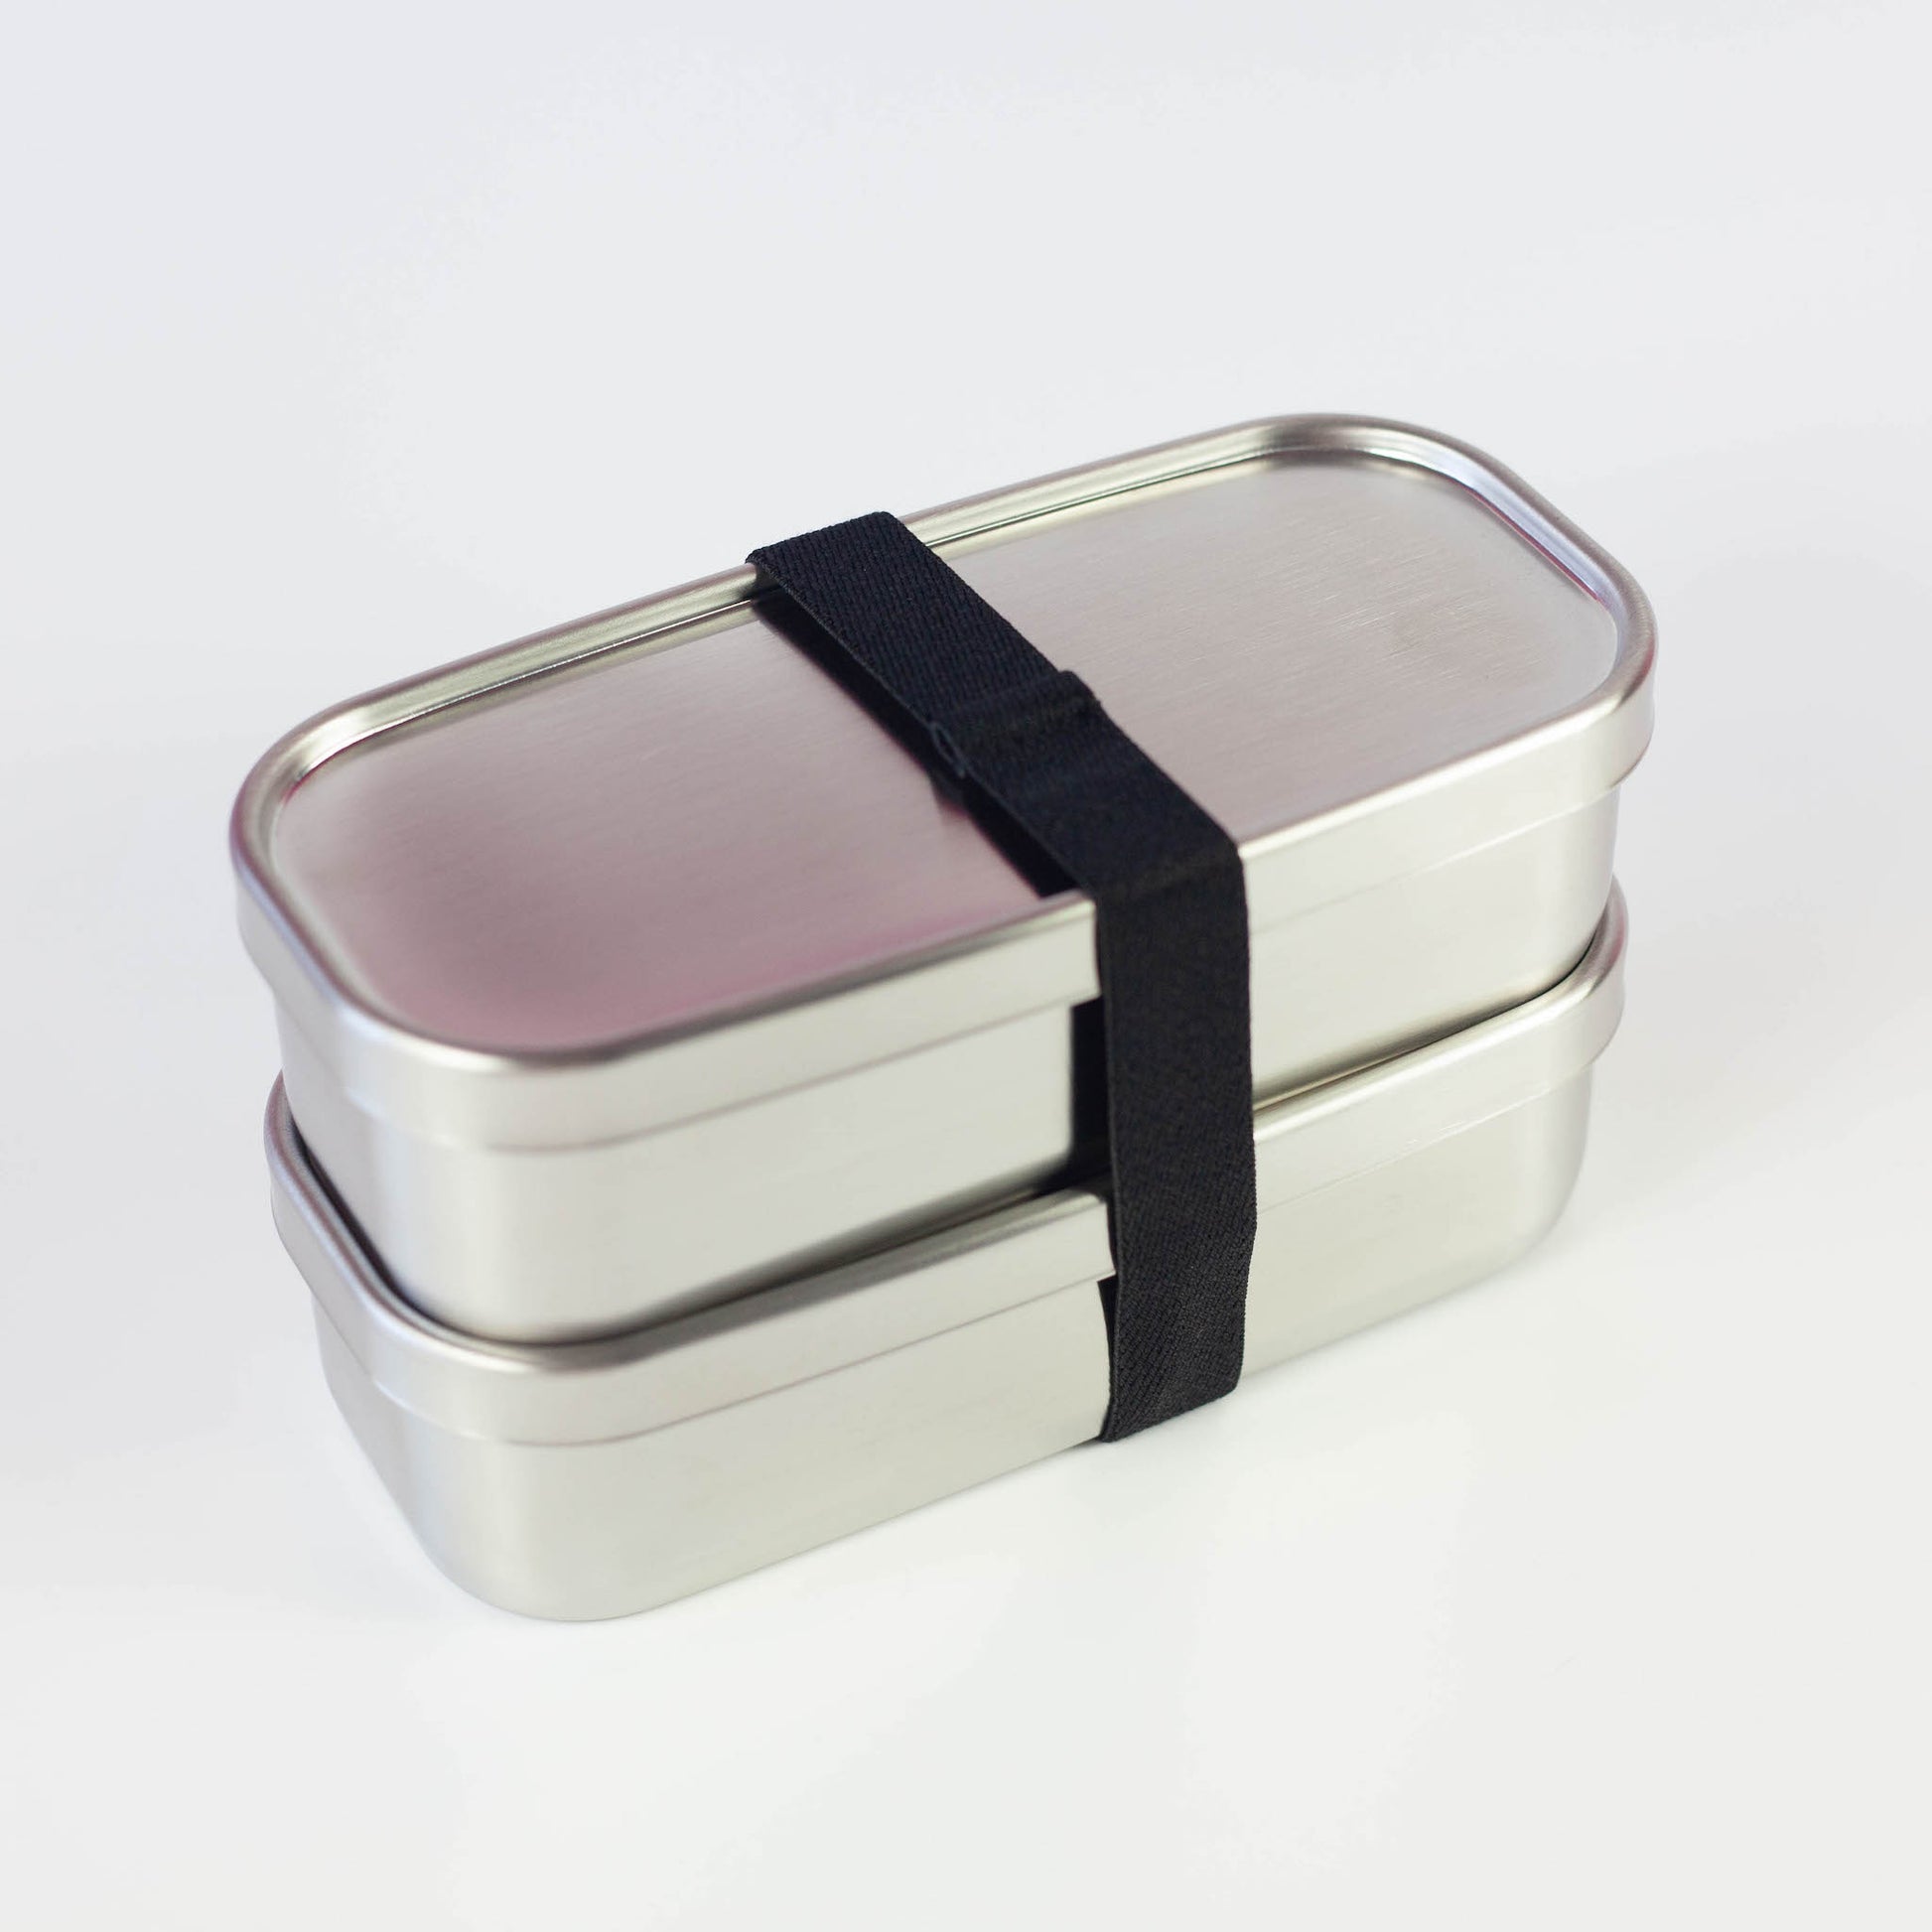 Aizawa Rectangular Slim Two-Tier Lunch Box Stainless Steel Bento Box 700ml